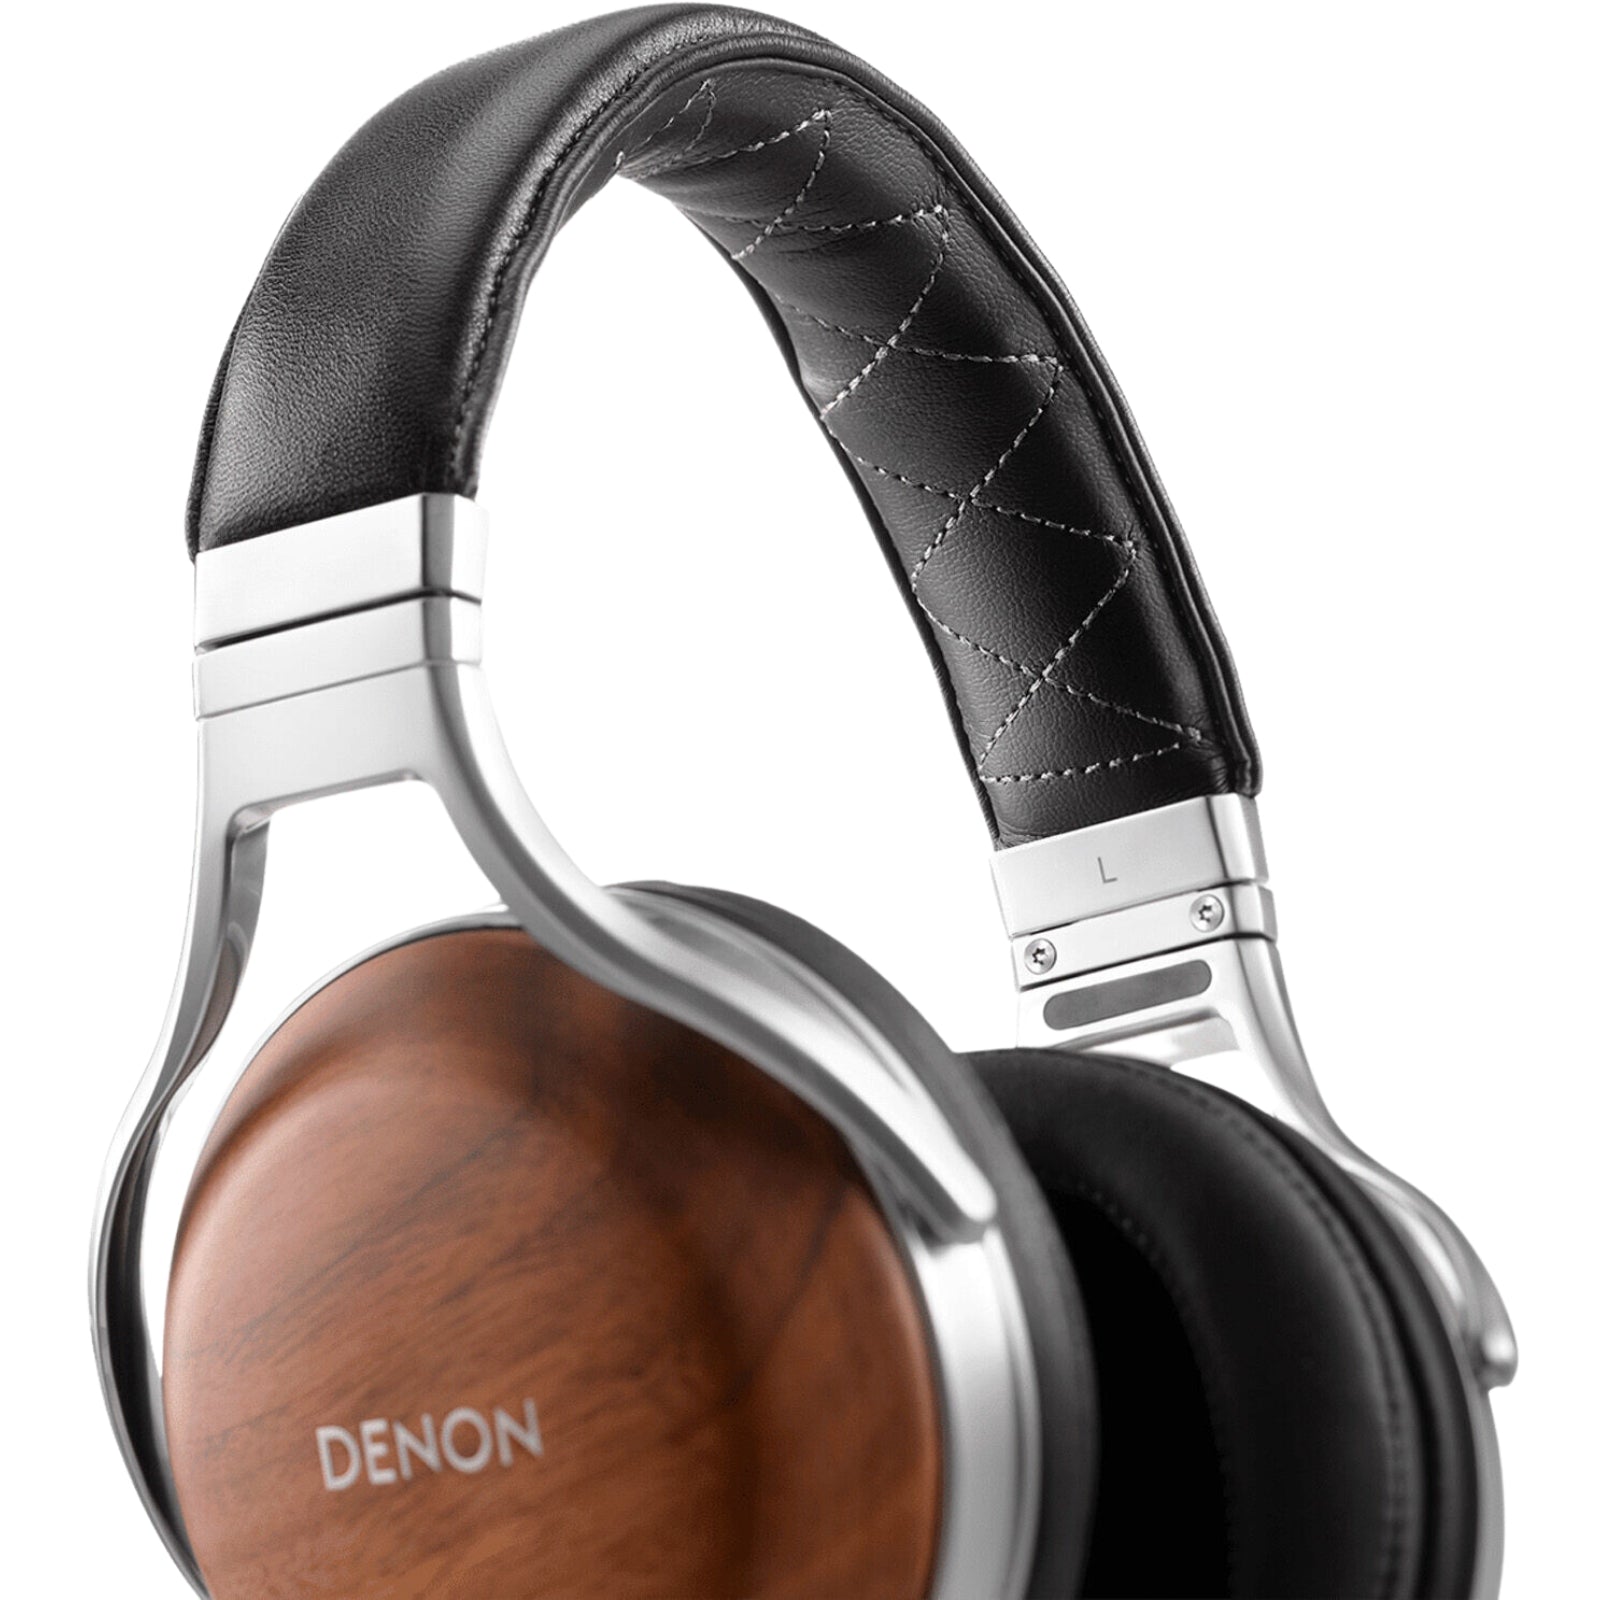 Denon AH-D7200 Over-Ear Headphones - MyMobile